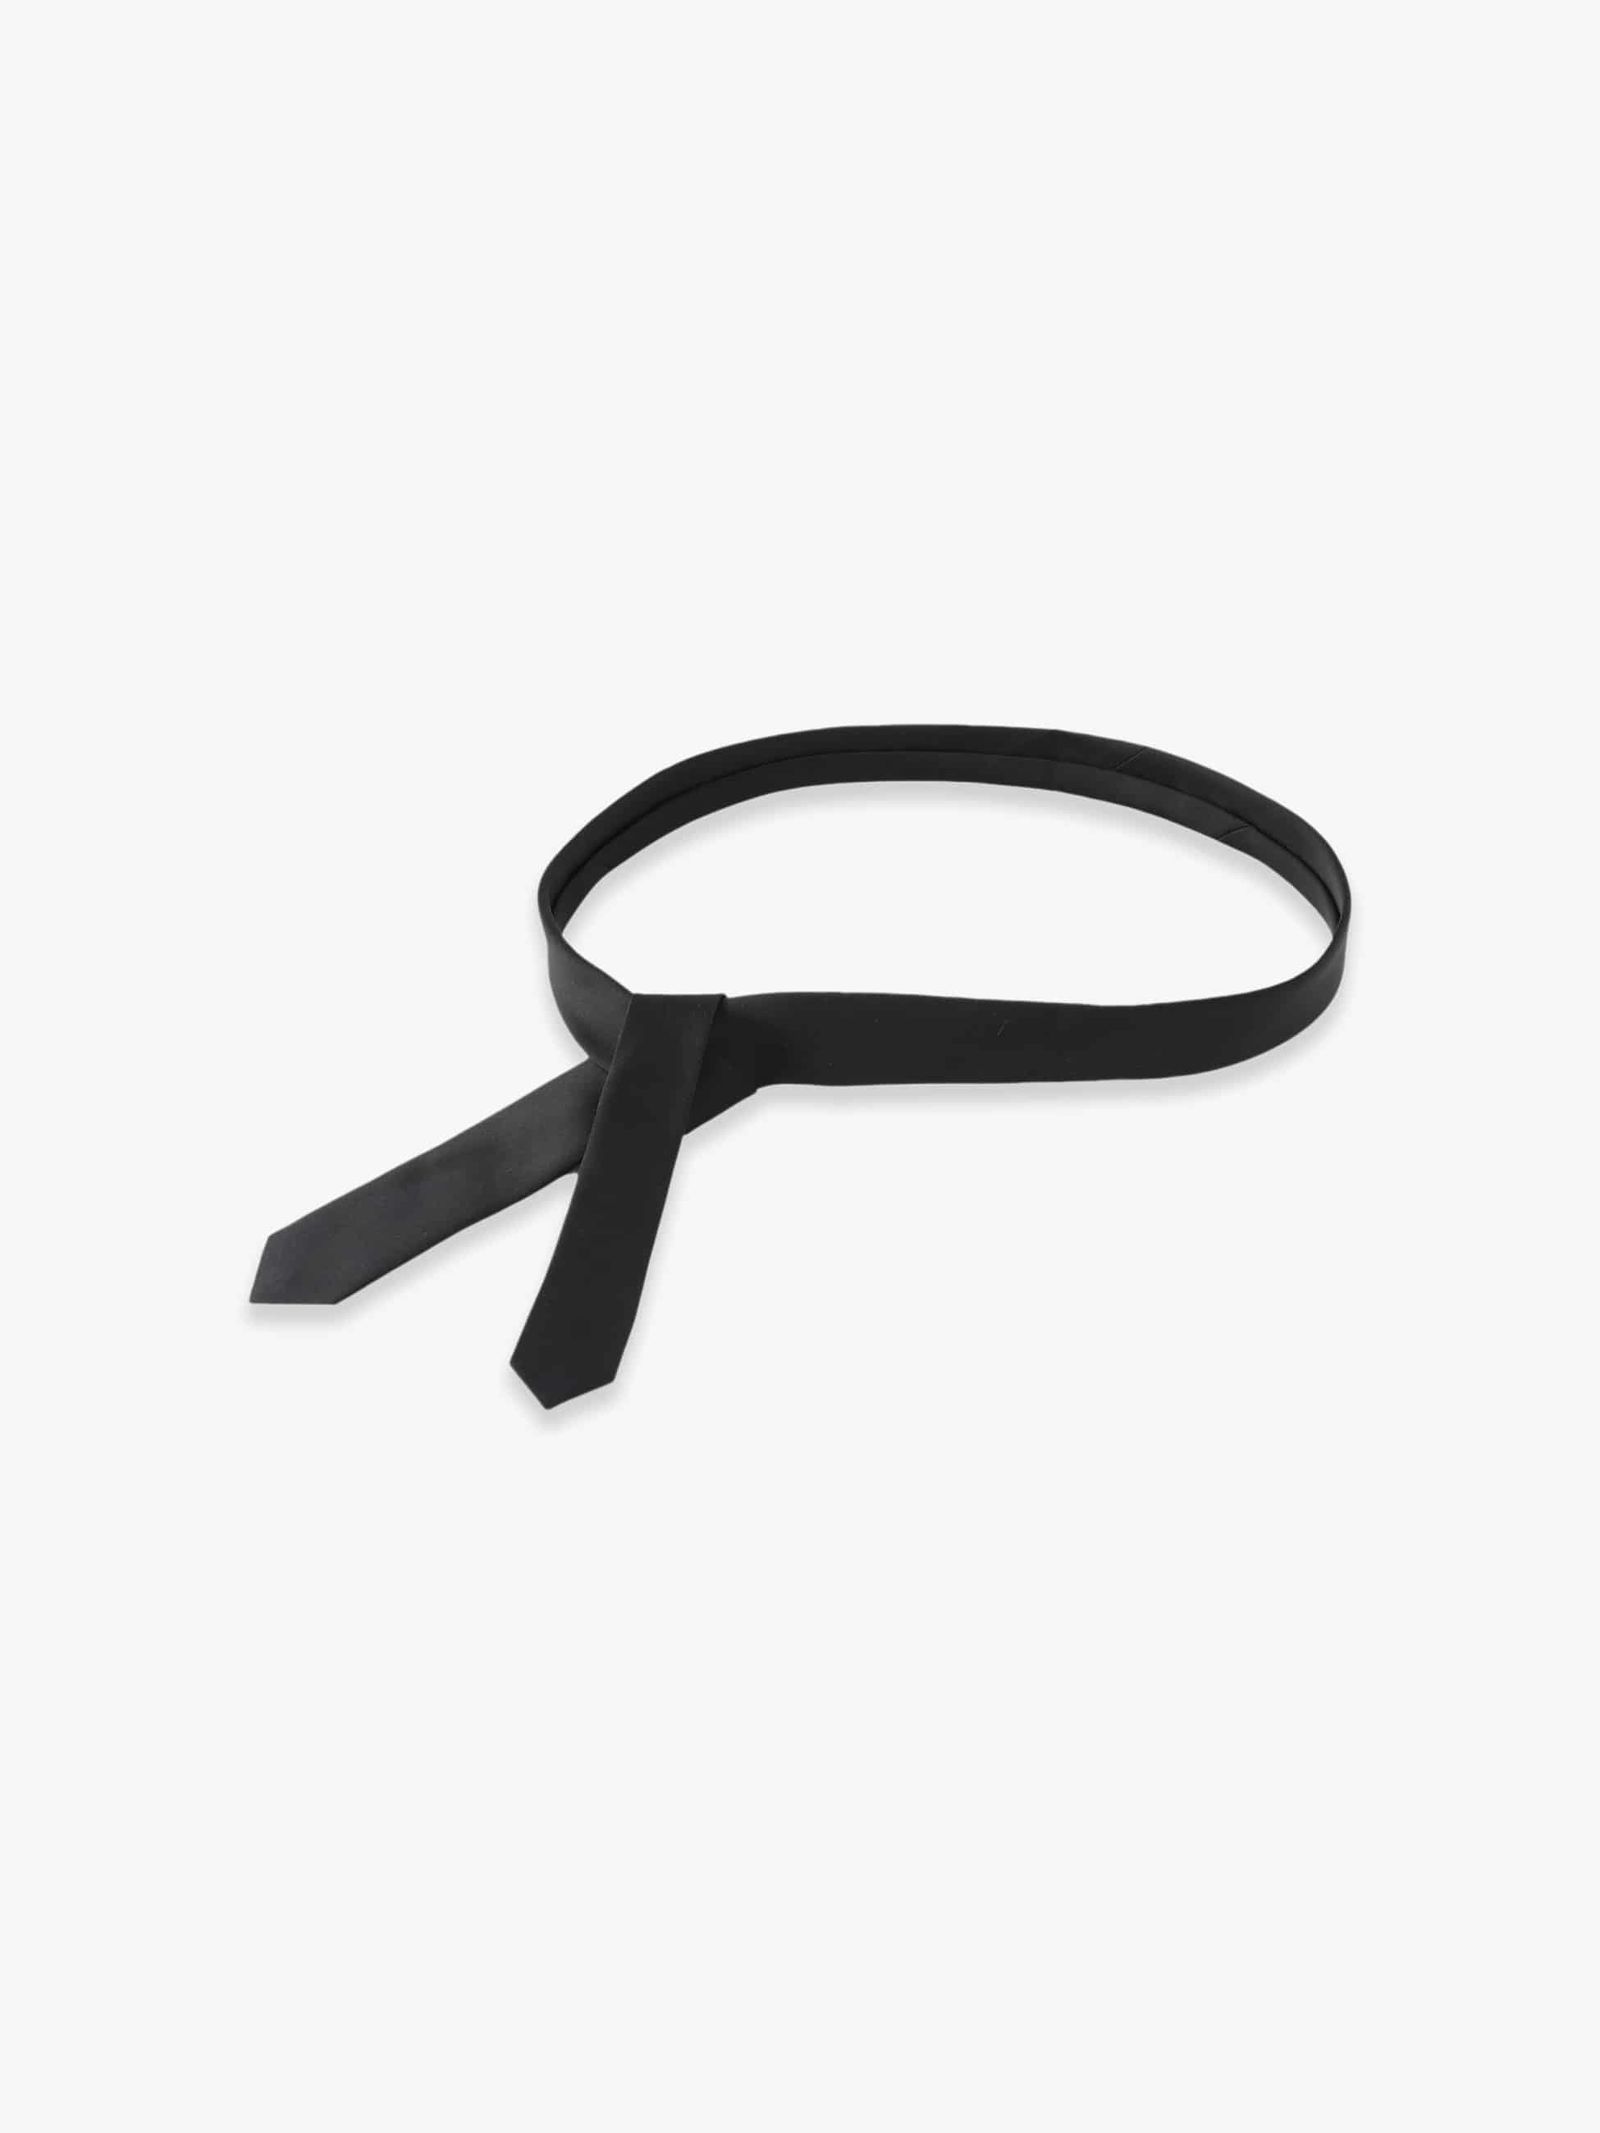 J.B.ATTIRE Paris tie belt ネクタイ ベルト 黒 新品 - 小物